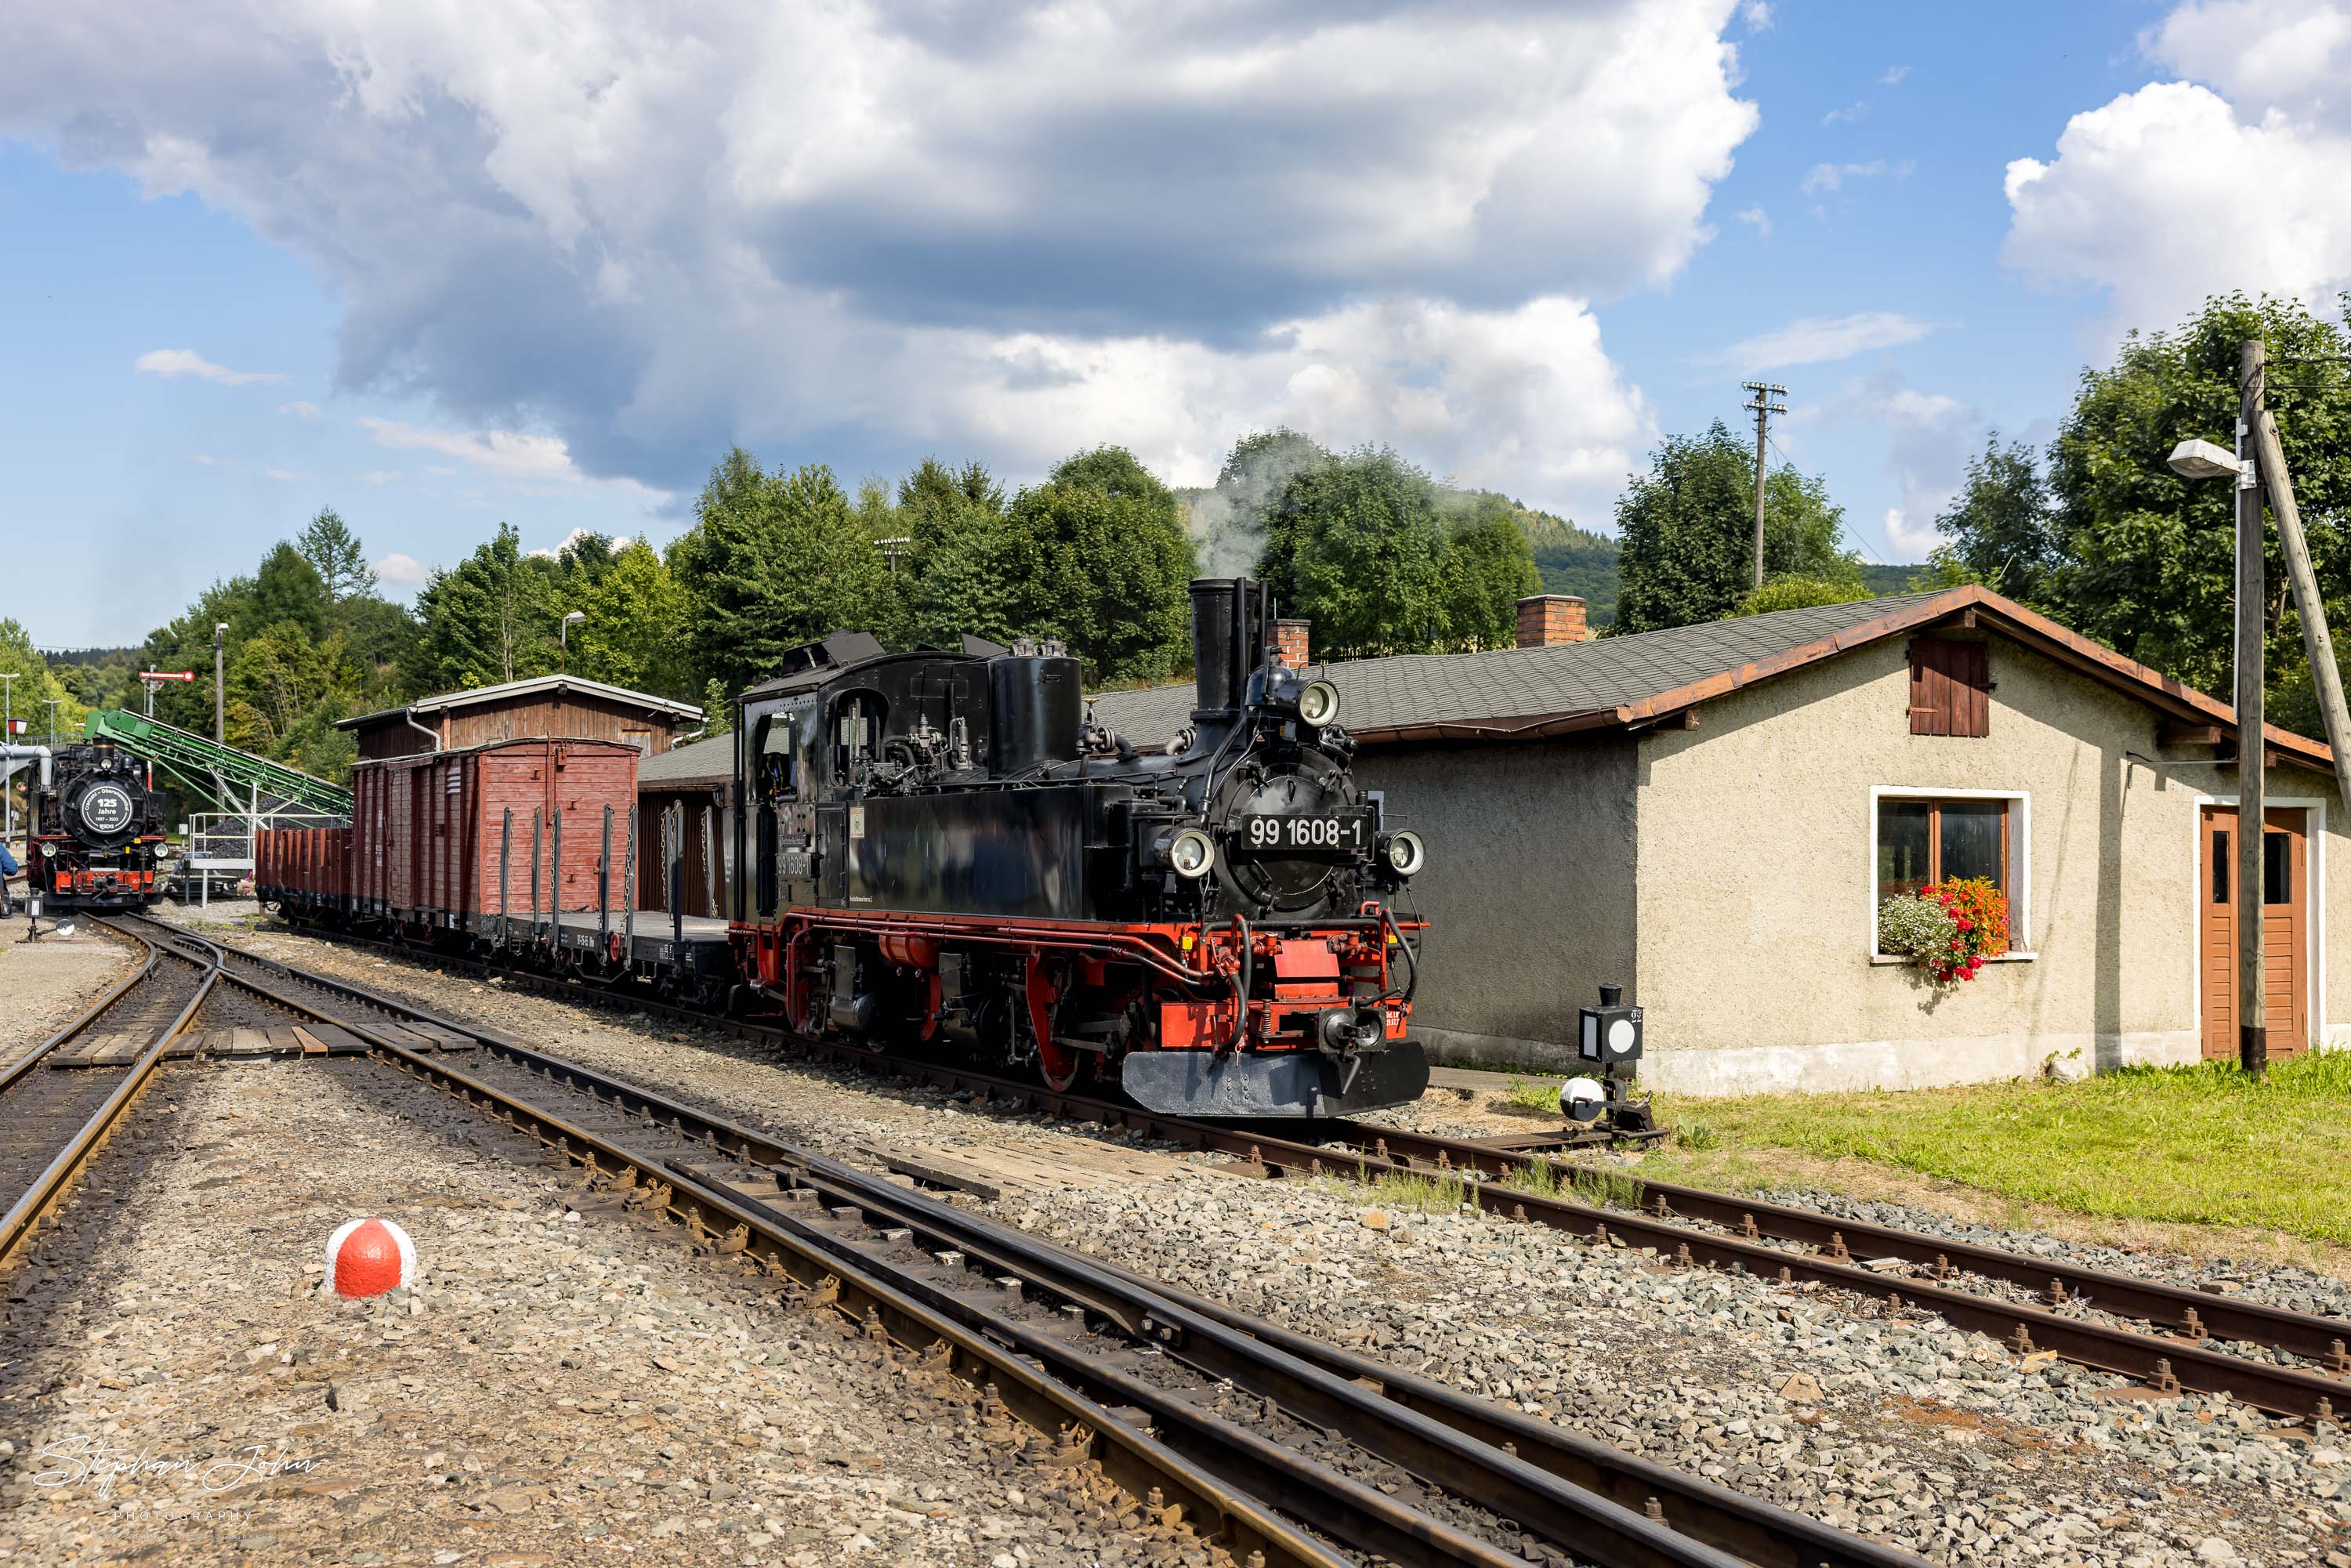 Lok 99 1608-1steht in Cranzahl und wartet auf den Einsatz vor Zug P 1023 nach Oberwiesenthal